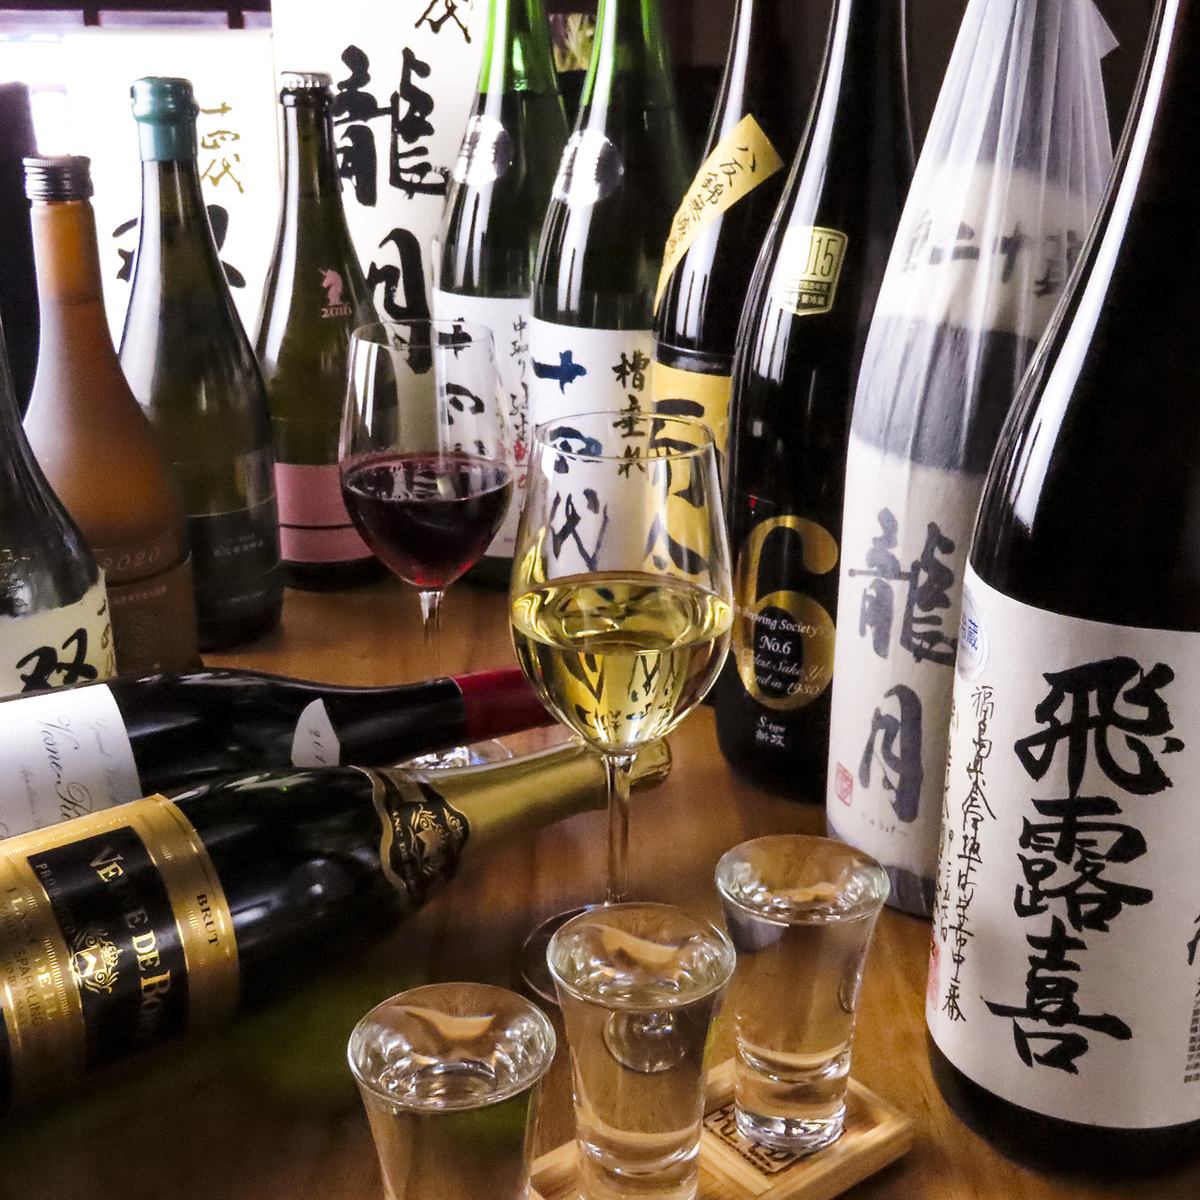 与日本酒相配的菜肴以及从全国各地以合理价格订购的日本酒♪